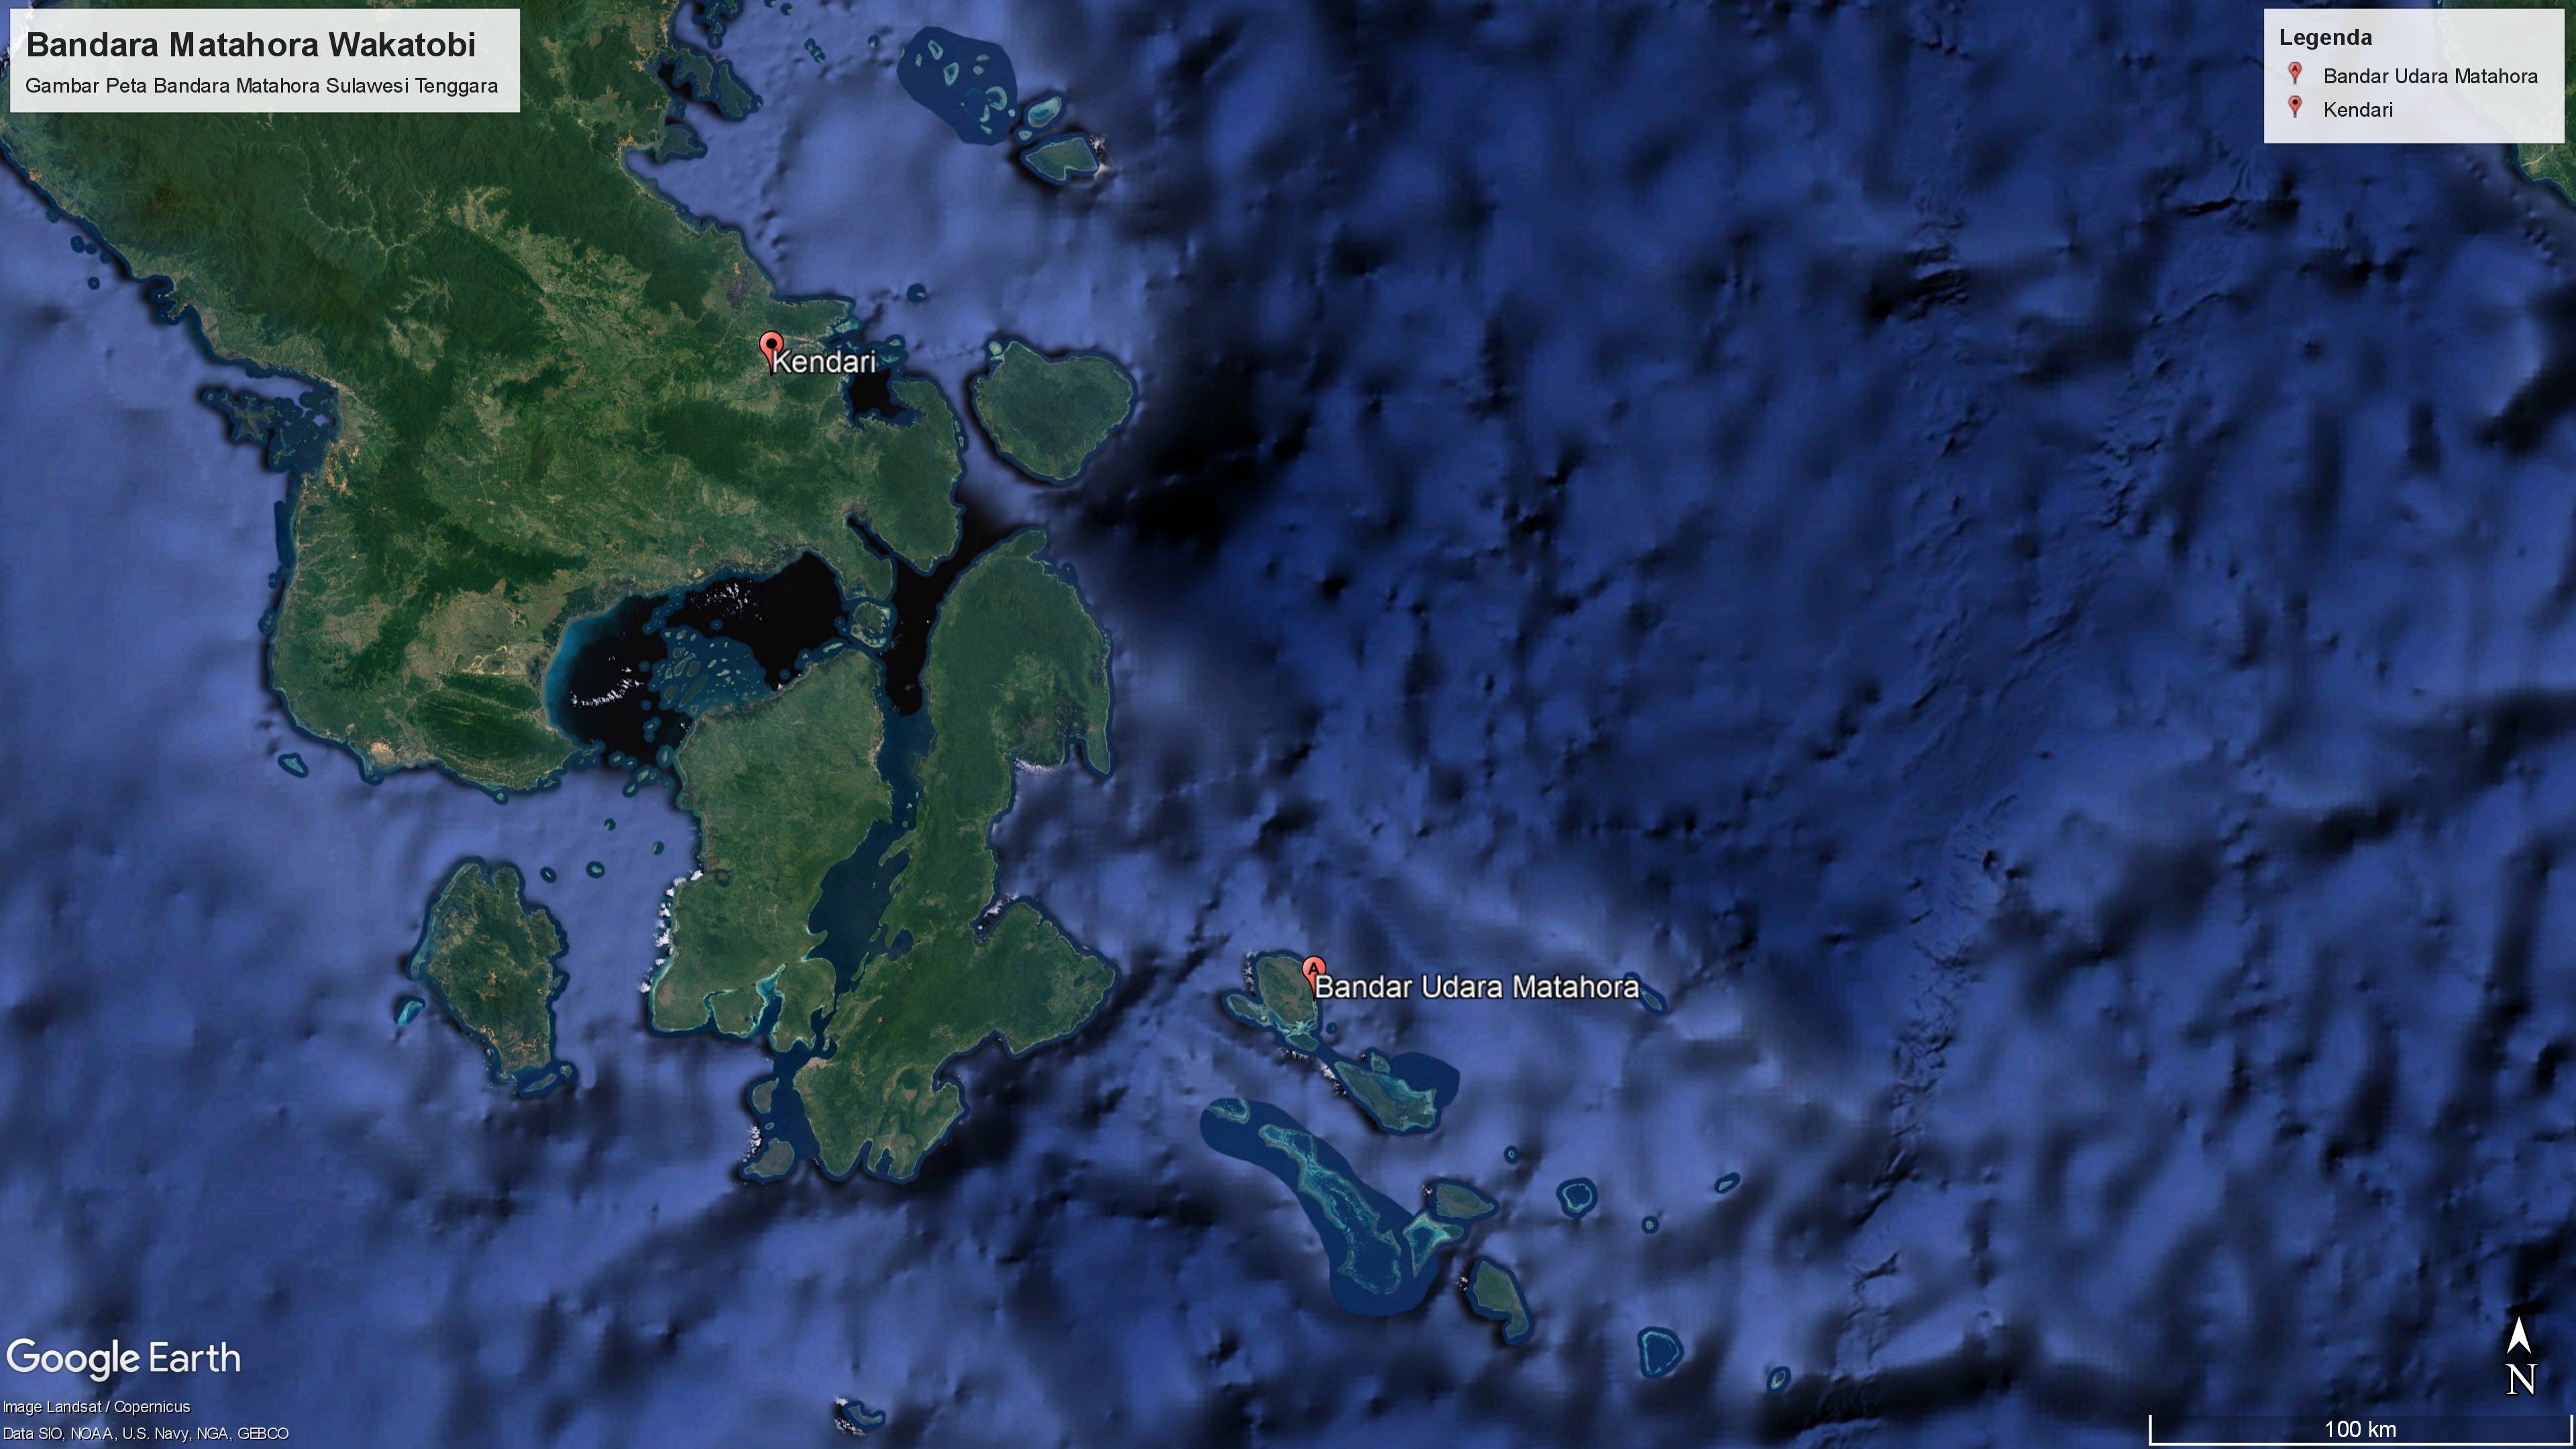 Gambar Peta Bandara Bandara Matahora. Kabupaten Wakatobi, Provinsi Sulawesi Tenggara